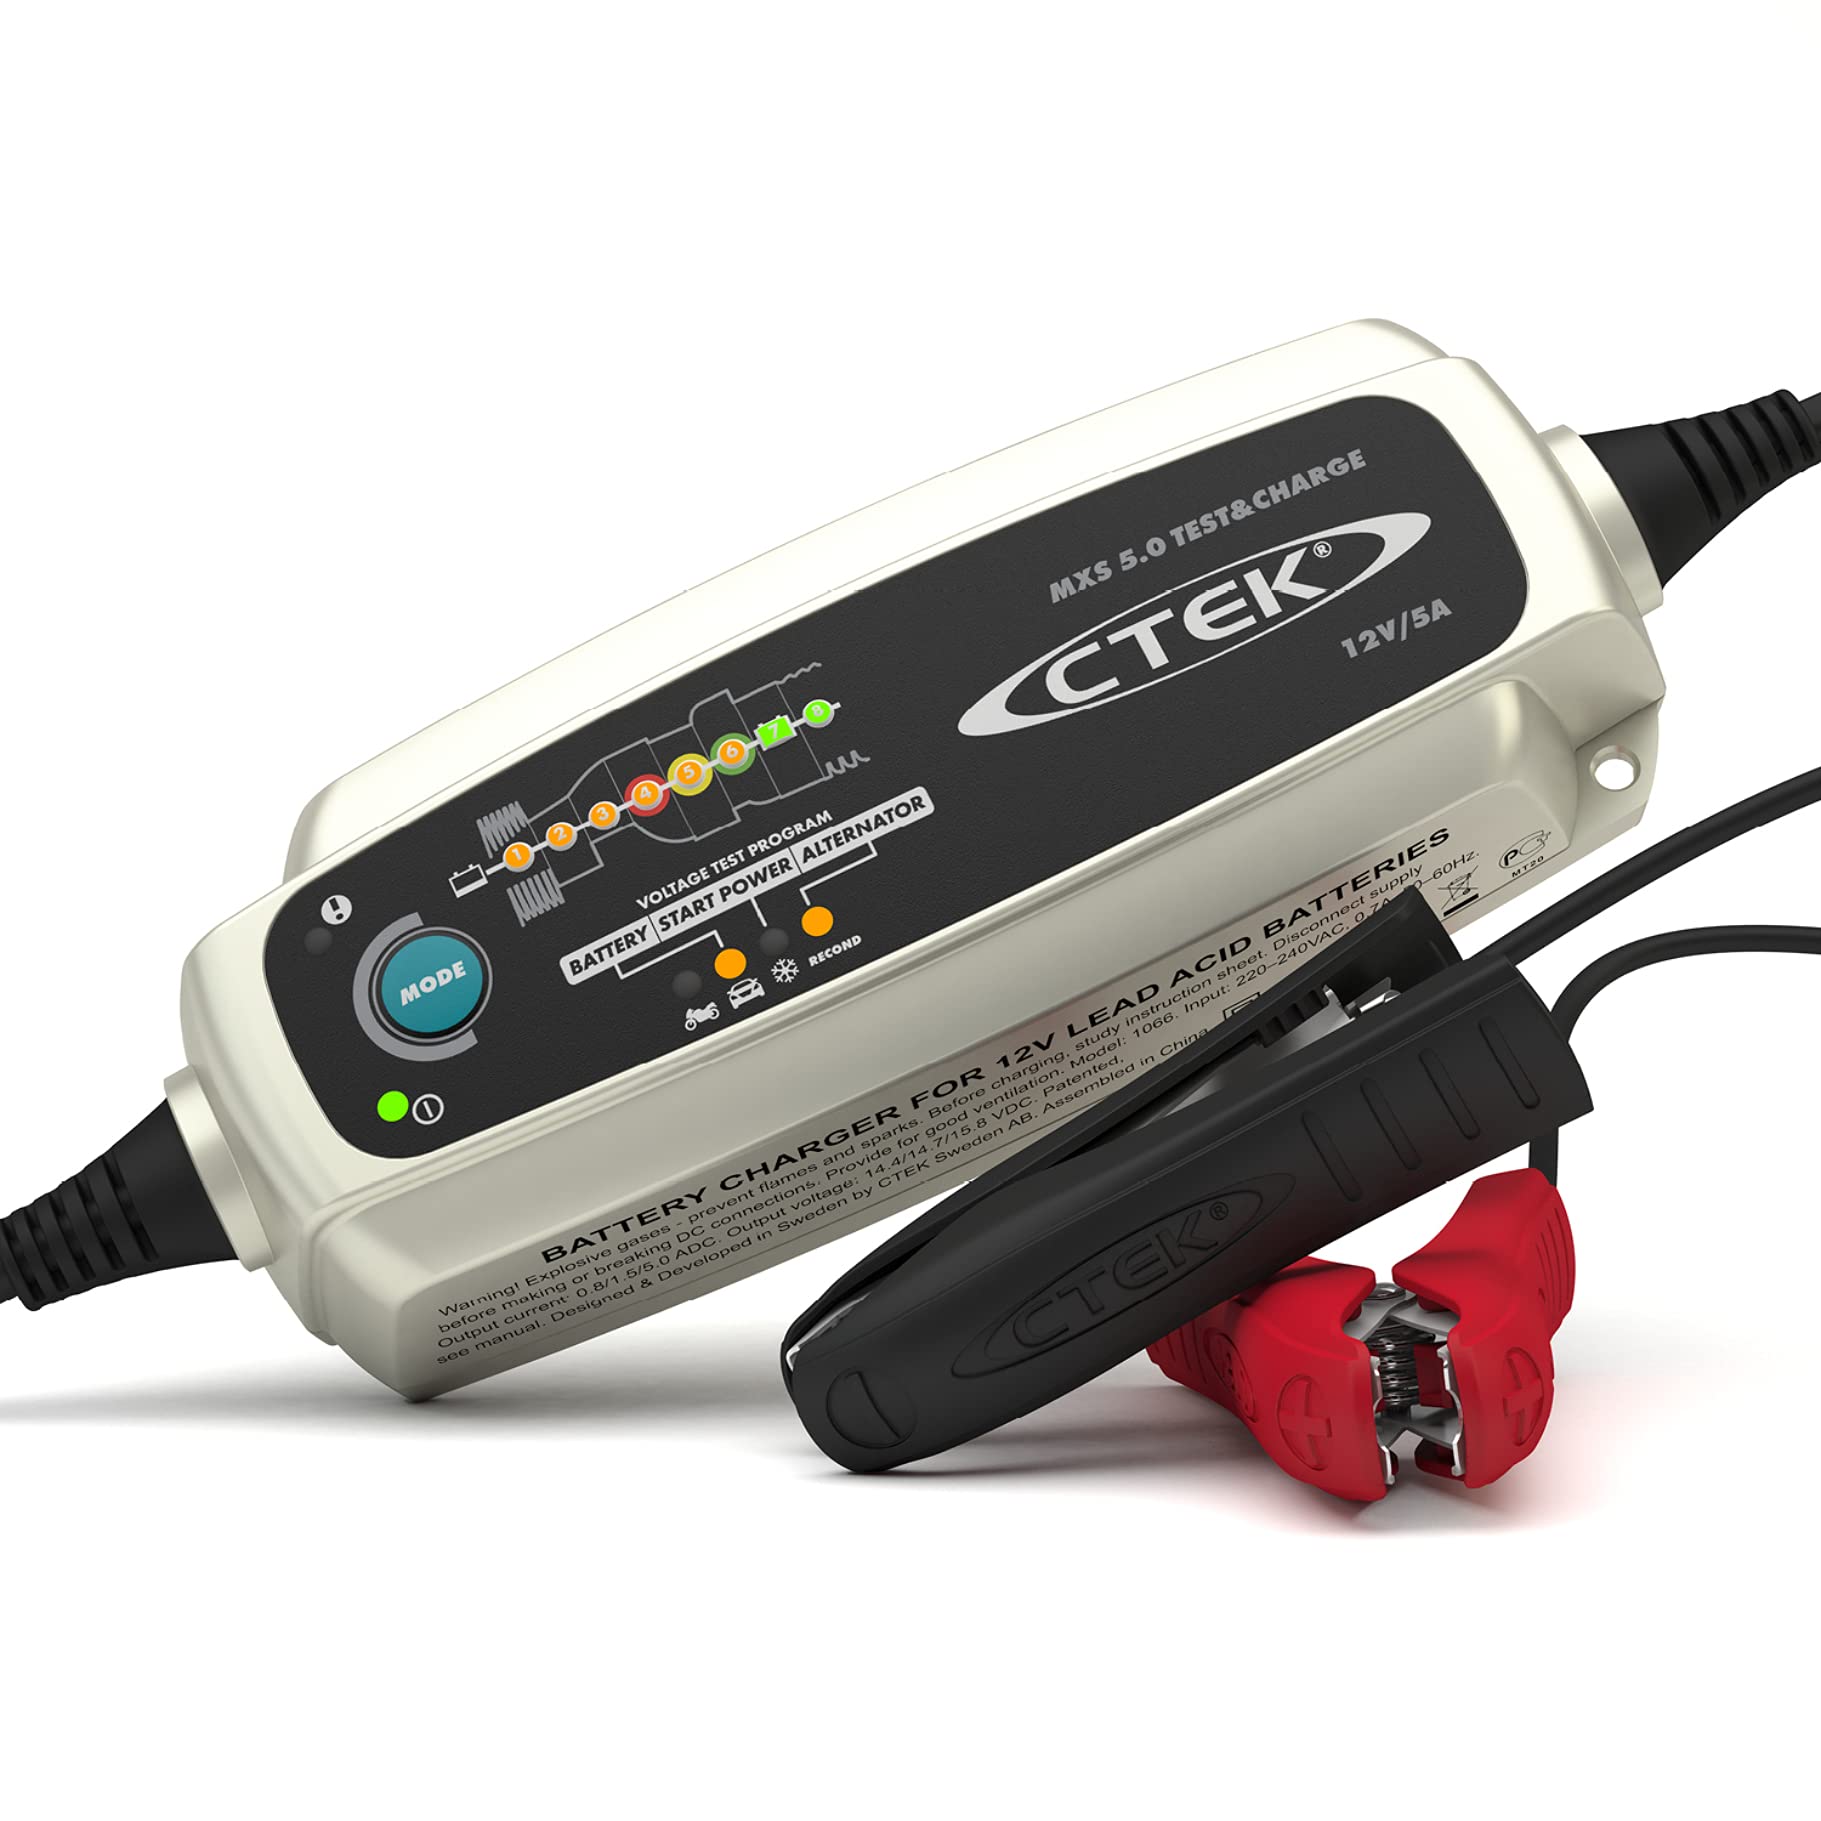 CTEK MXS 5.0 Test & Charge, Batterieladegerät 12V 5A, Batteriepfleger, Ladegerät Auto Und LKW Ladegerät, Testet Batterie Und Lichtmaschine, Entsulfatierungsprogramm Und Rekonditionierungsmodus von CTEK